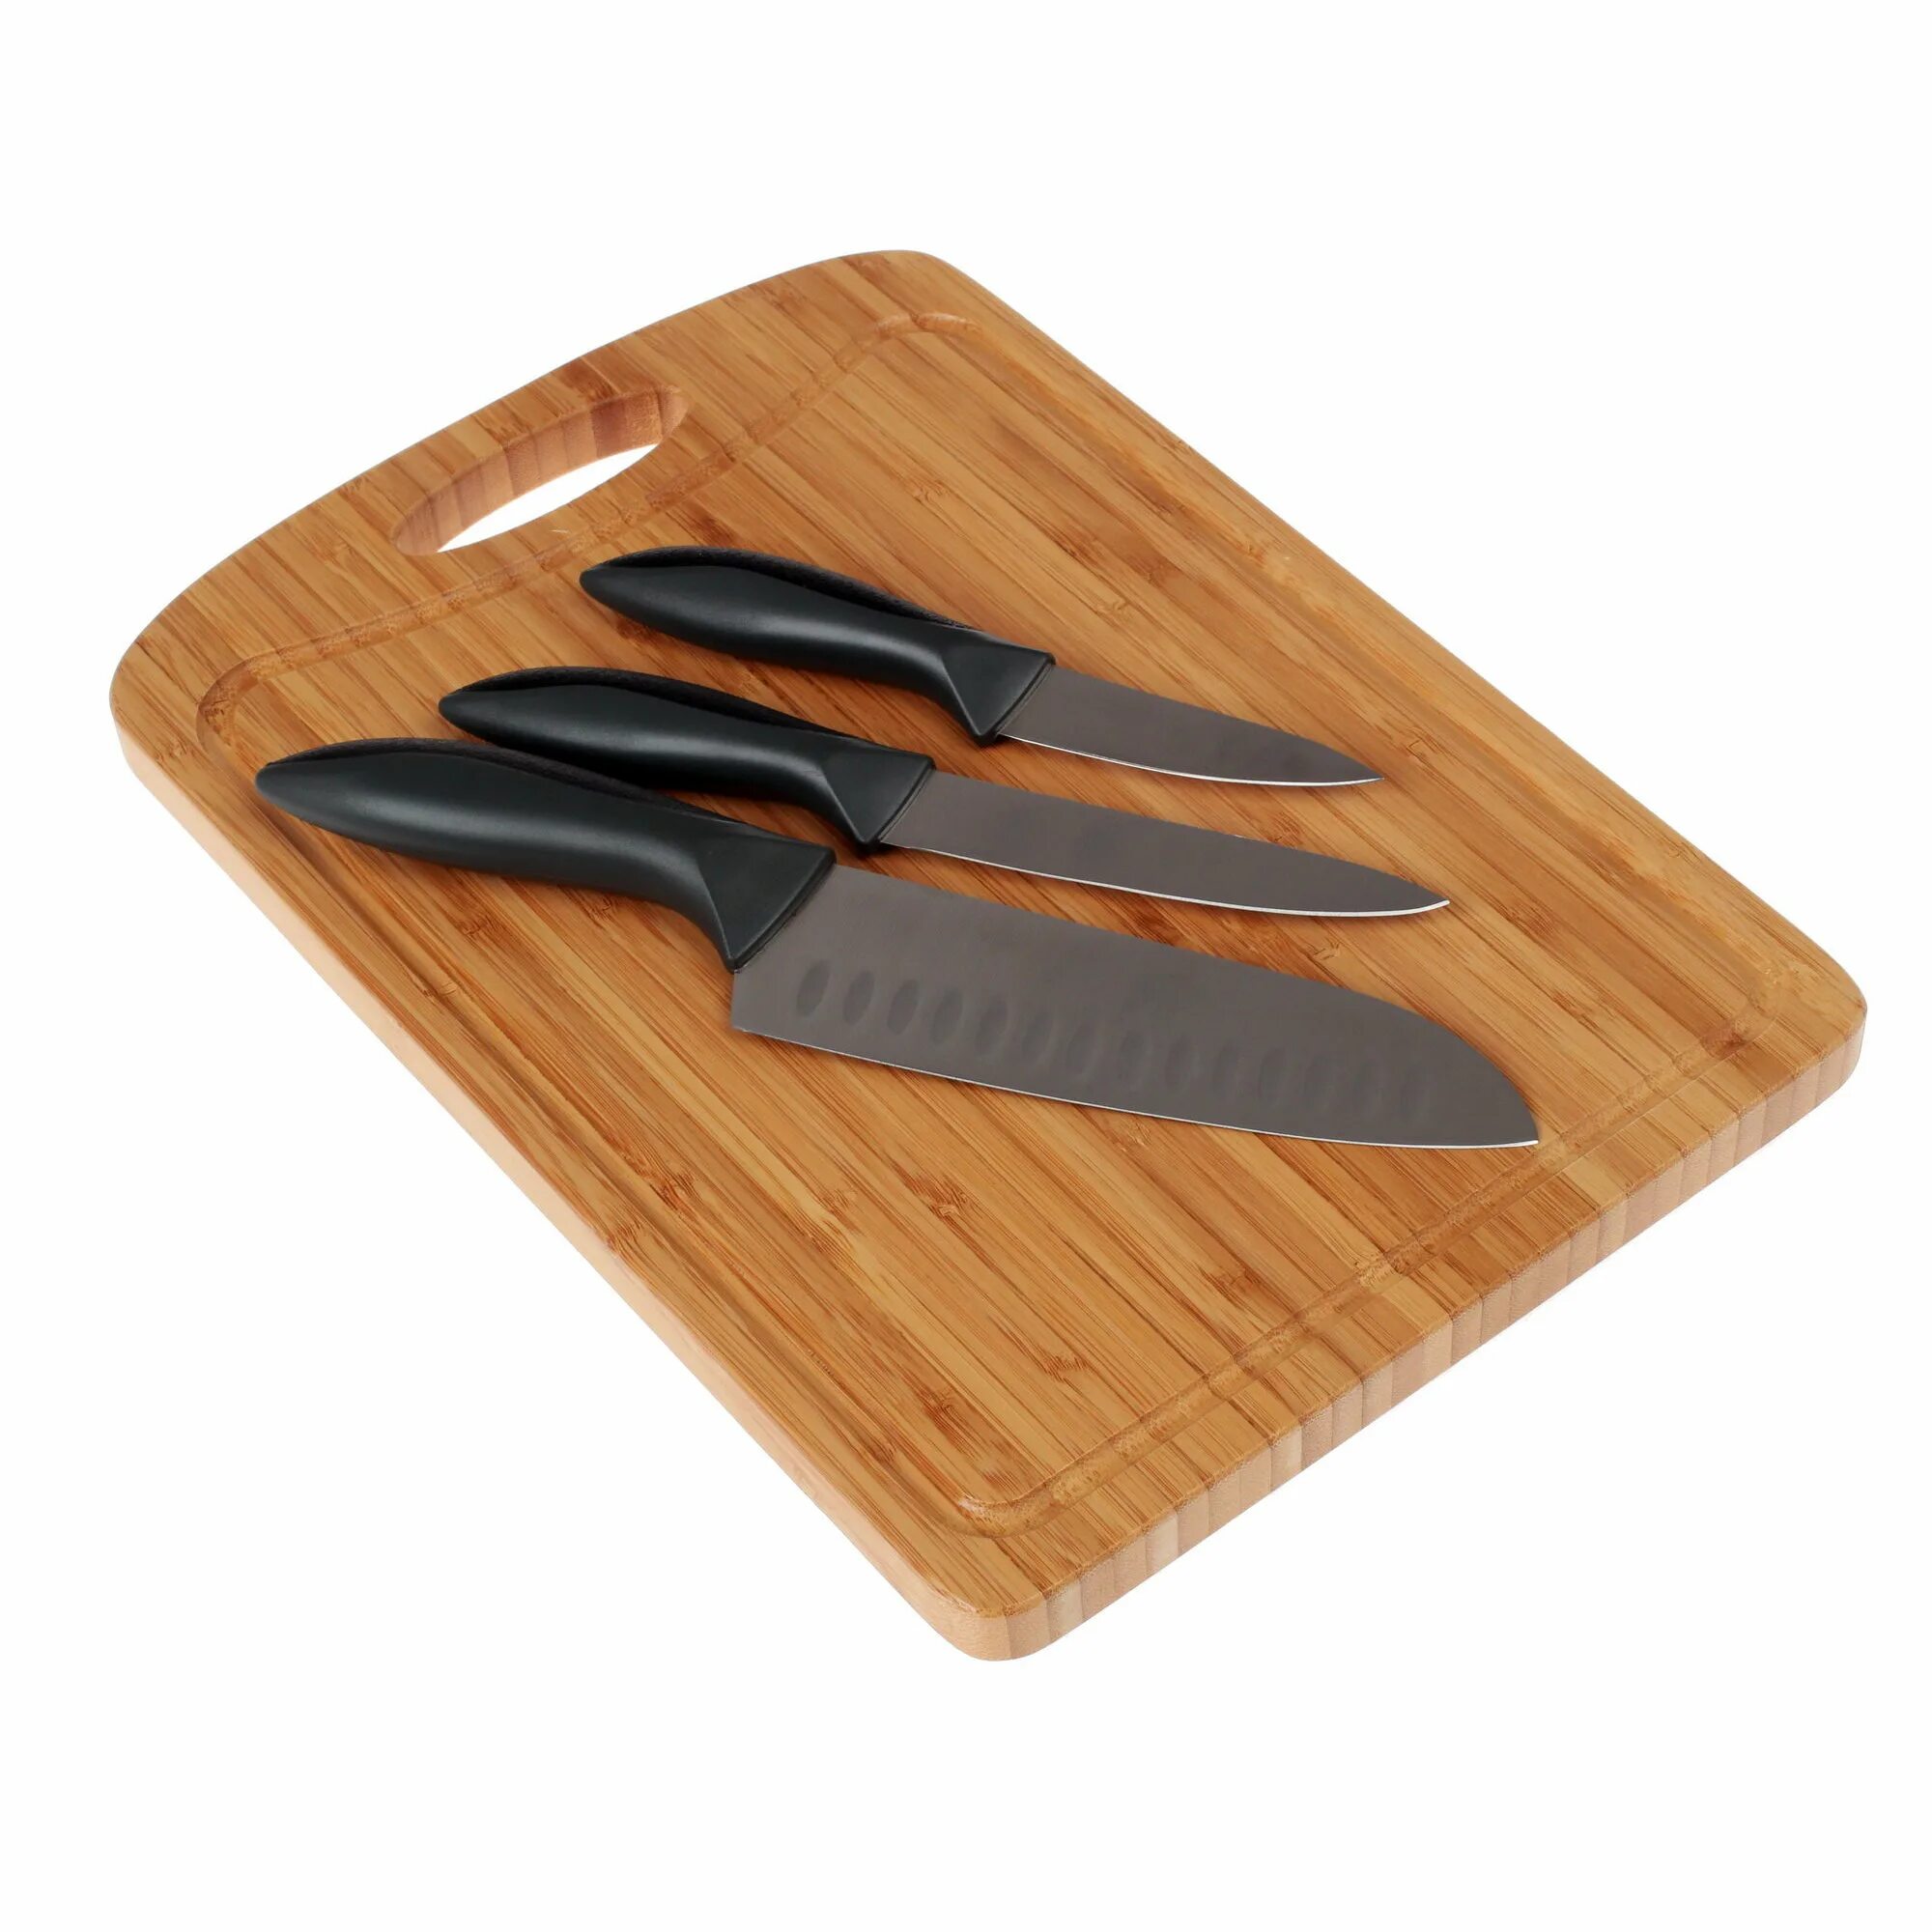 Rondell Rd-462. Набор кухонных ножей Rondell basselard (Rd-315). Rondell Primarch набор ножей. Набор ножей Рондел на Rondell. Набор разделочных ножей